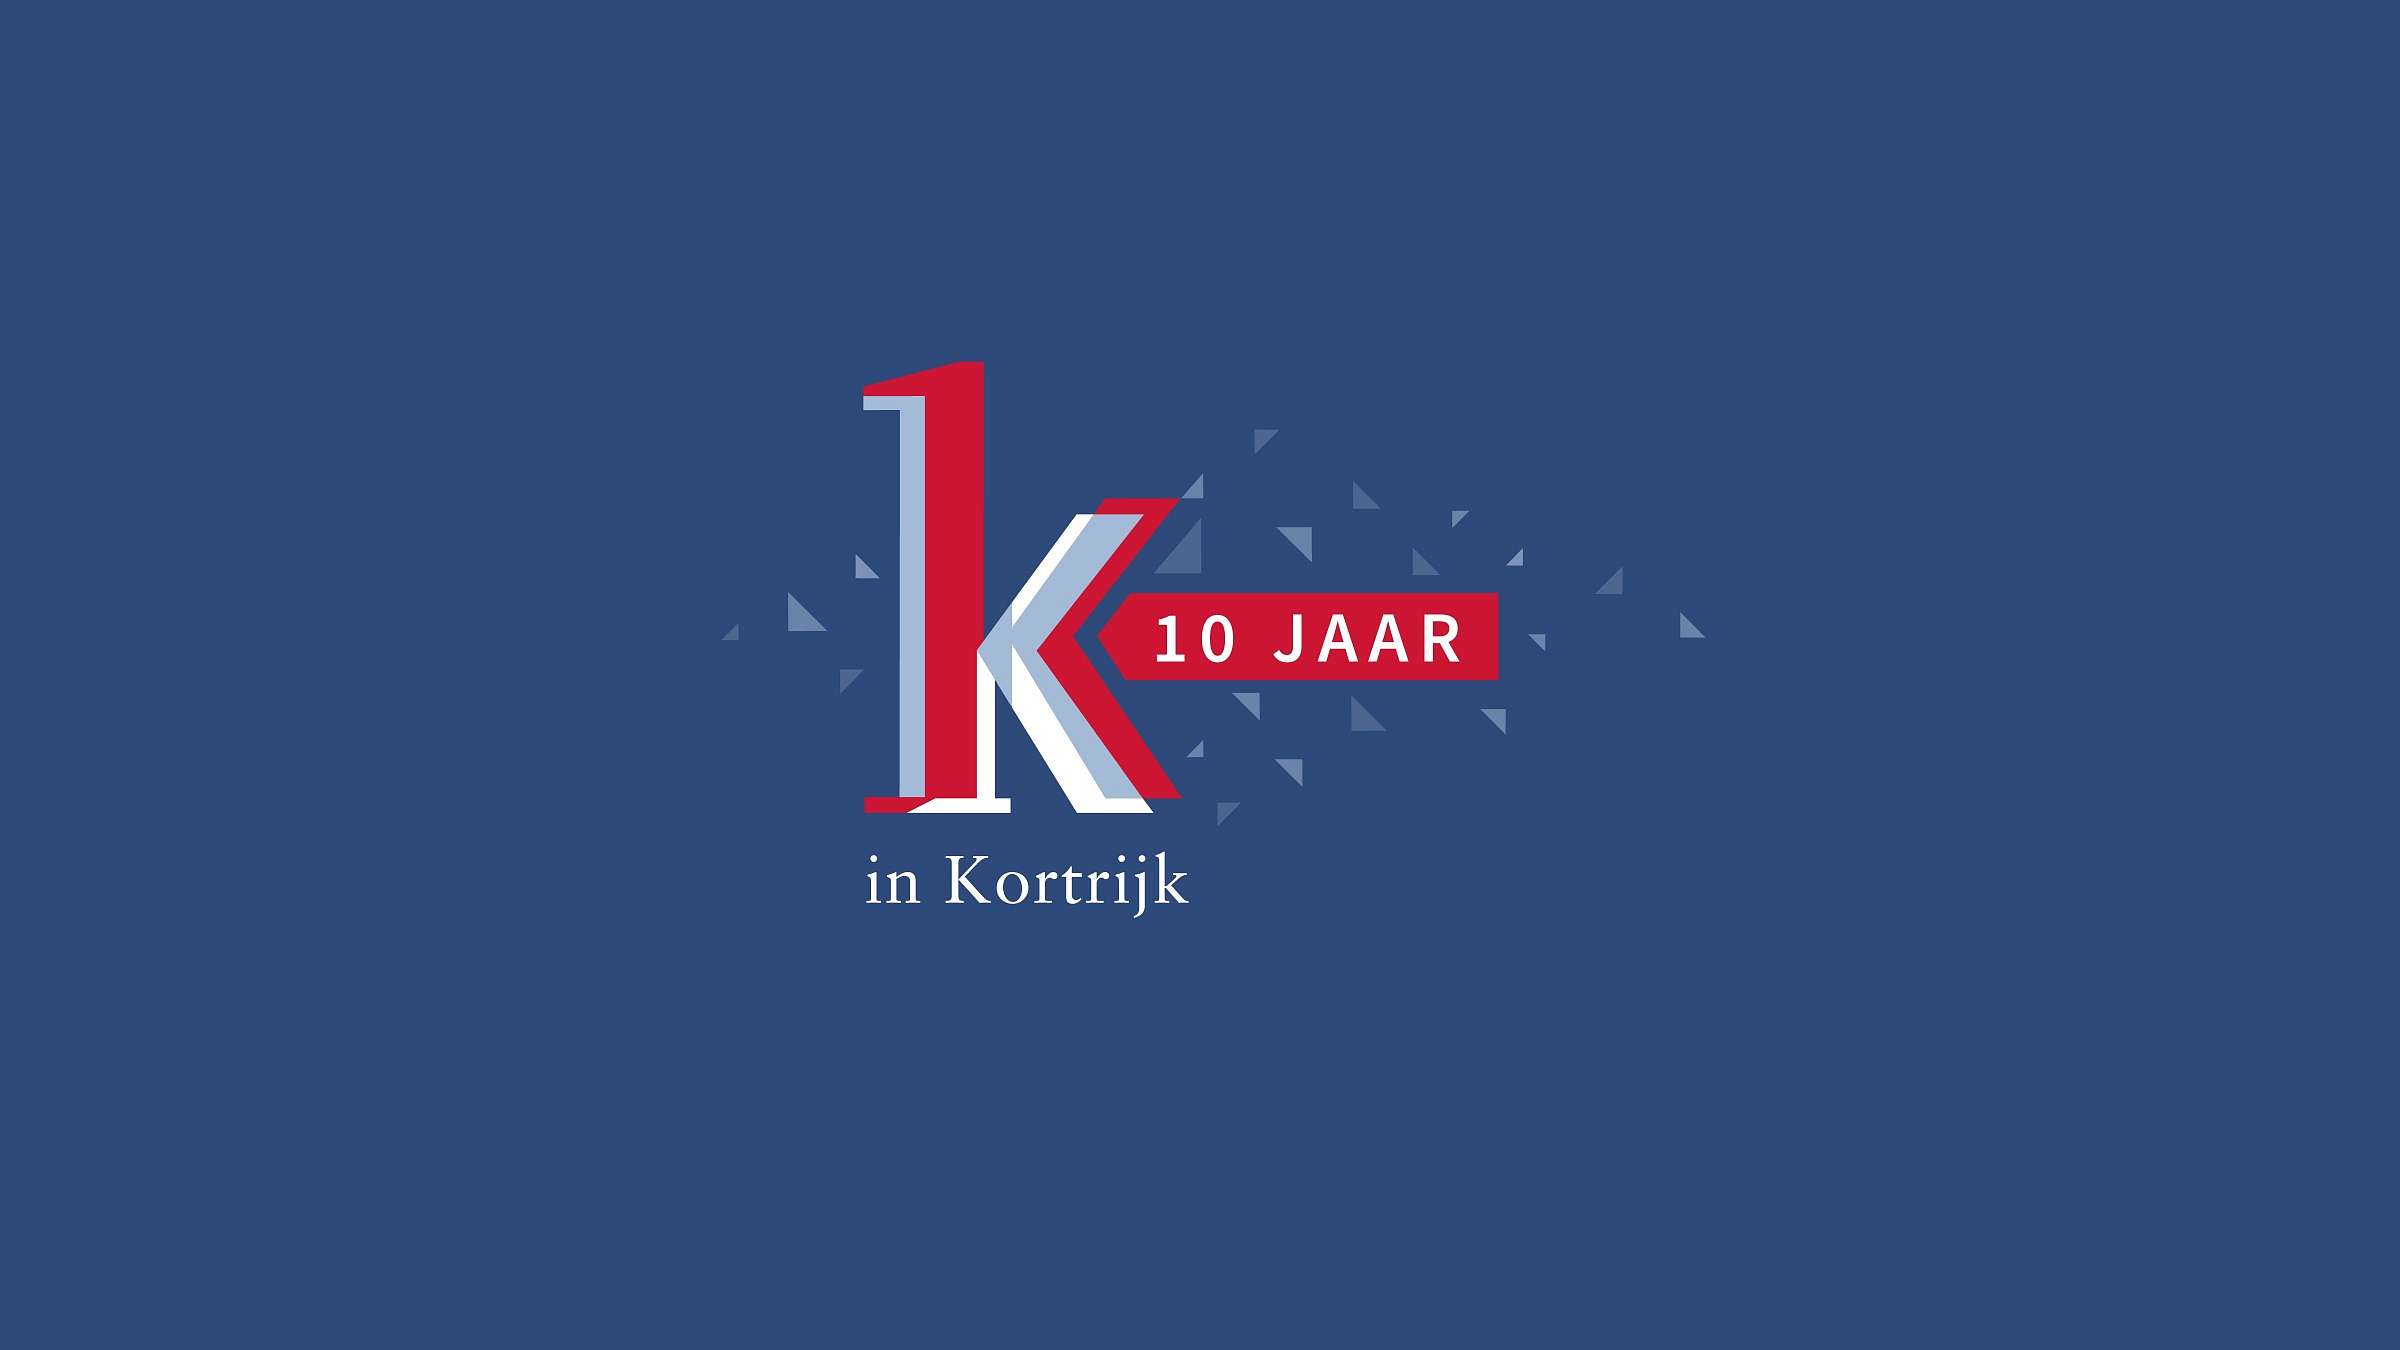 K in Kortrijk